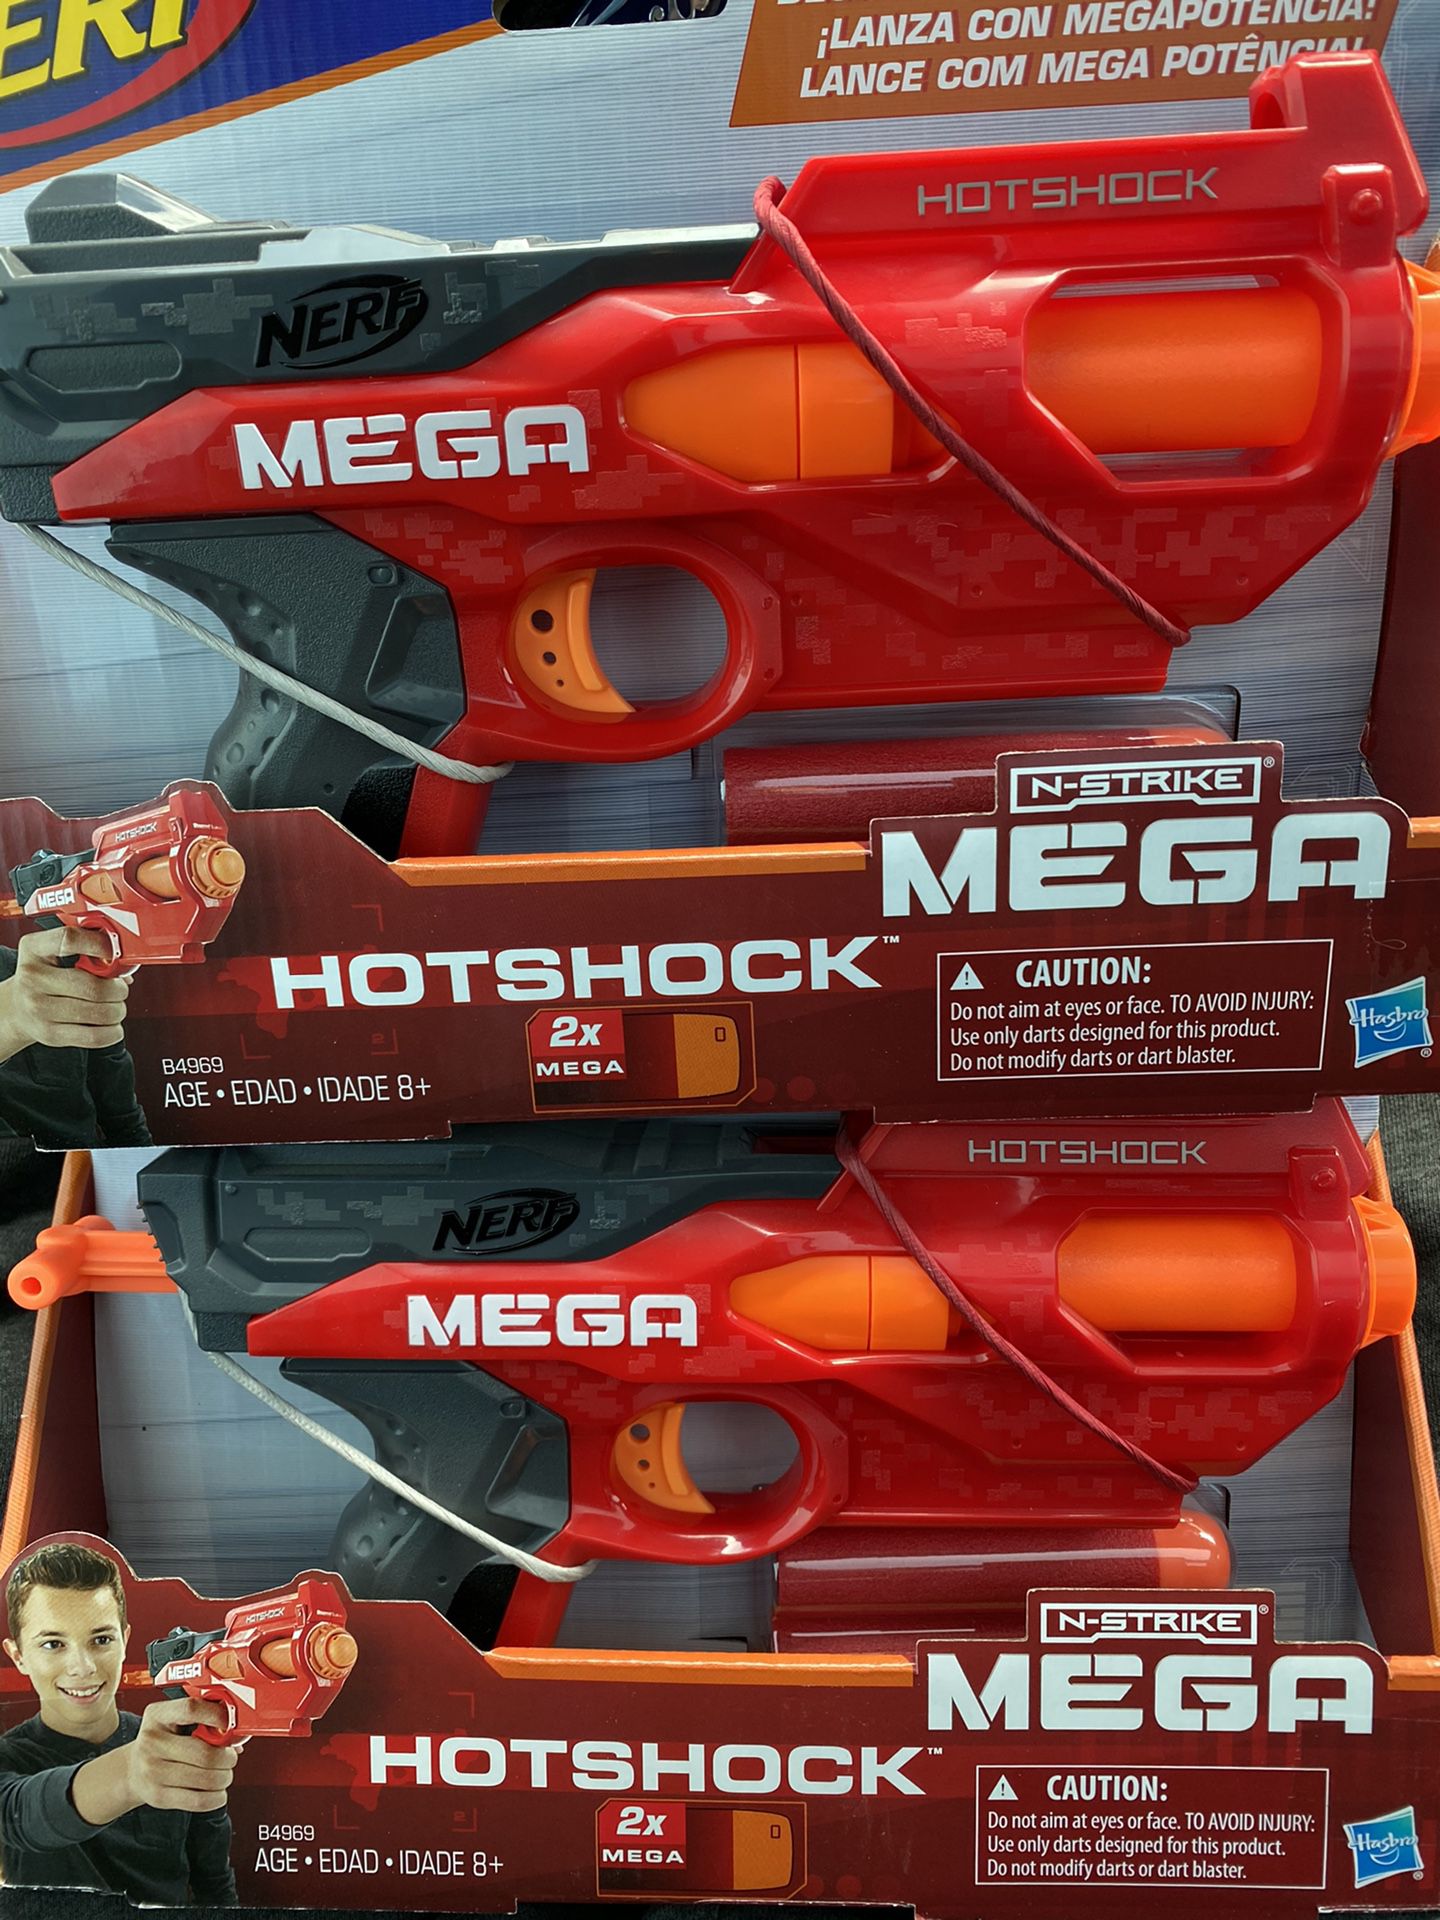 2 NEW NERF MEGA Hotshock guns.. $20 for the pair